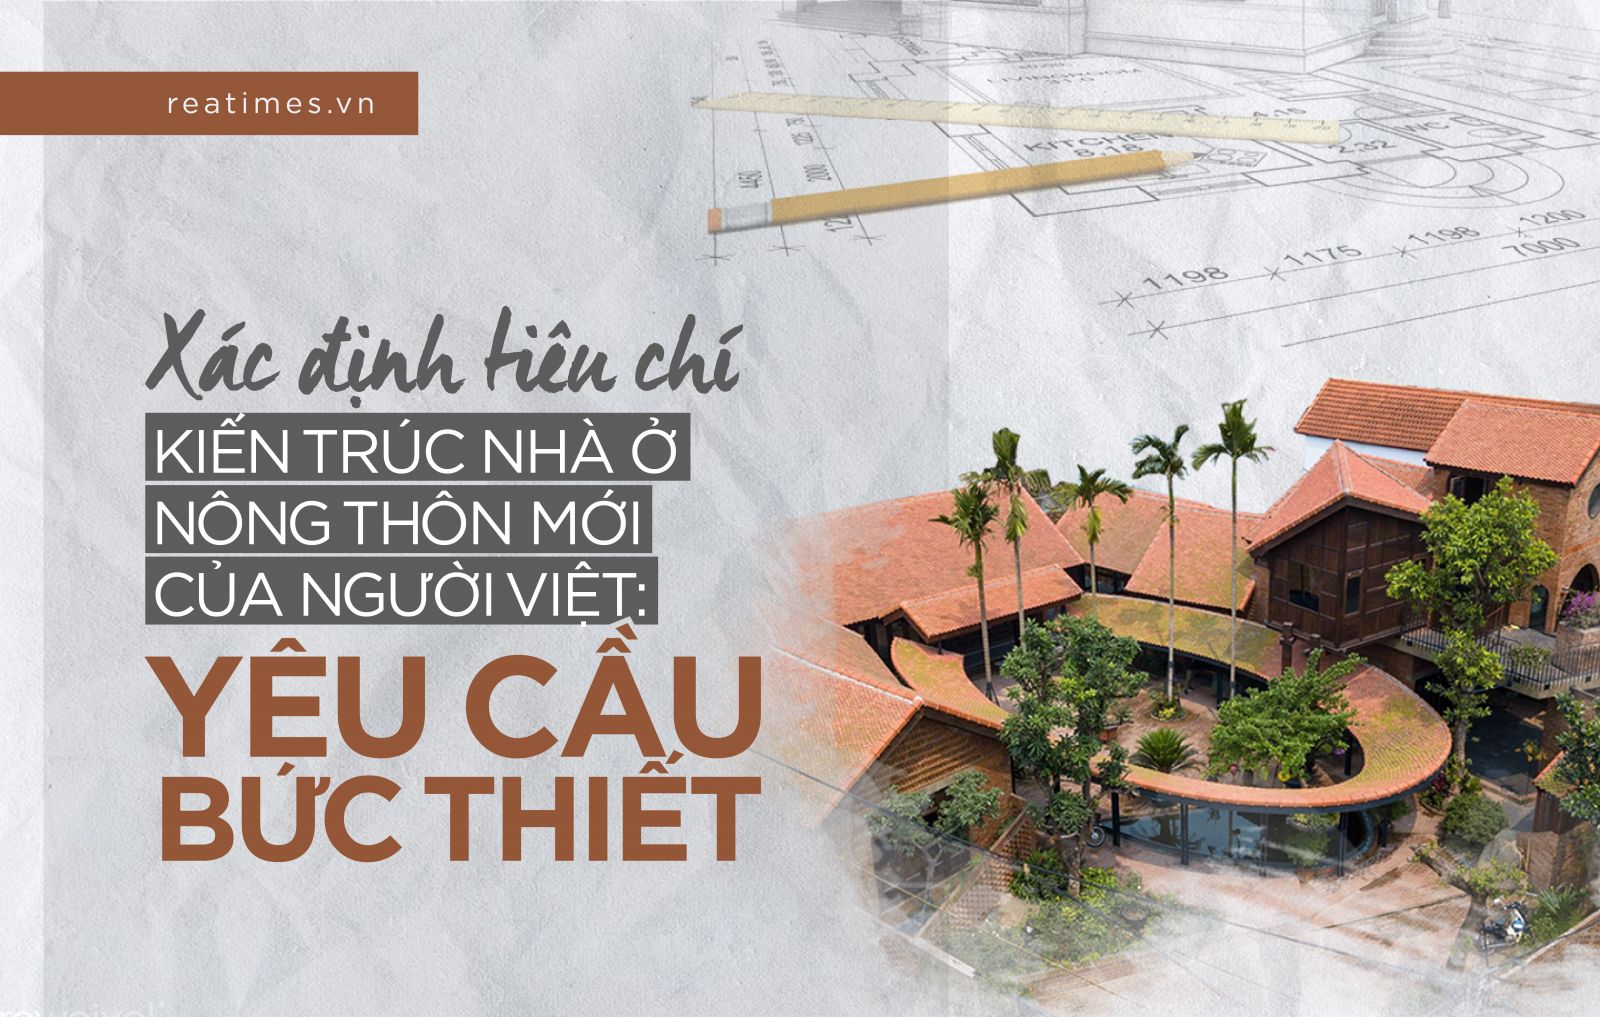  Xác định tiêu chí kiến trúc nhà ở nông thôn mới của người Việt